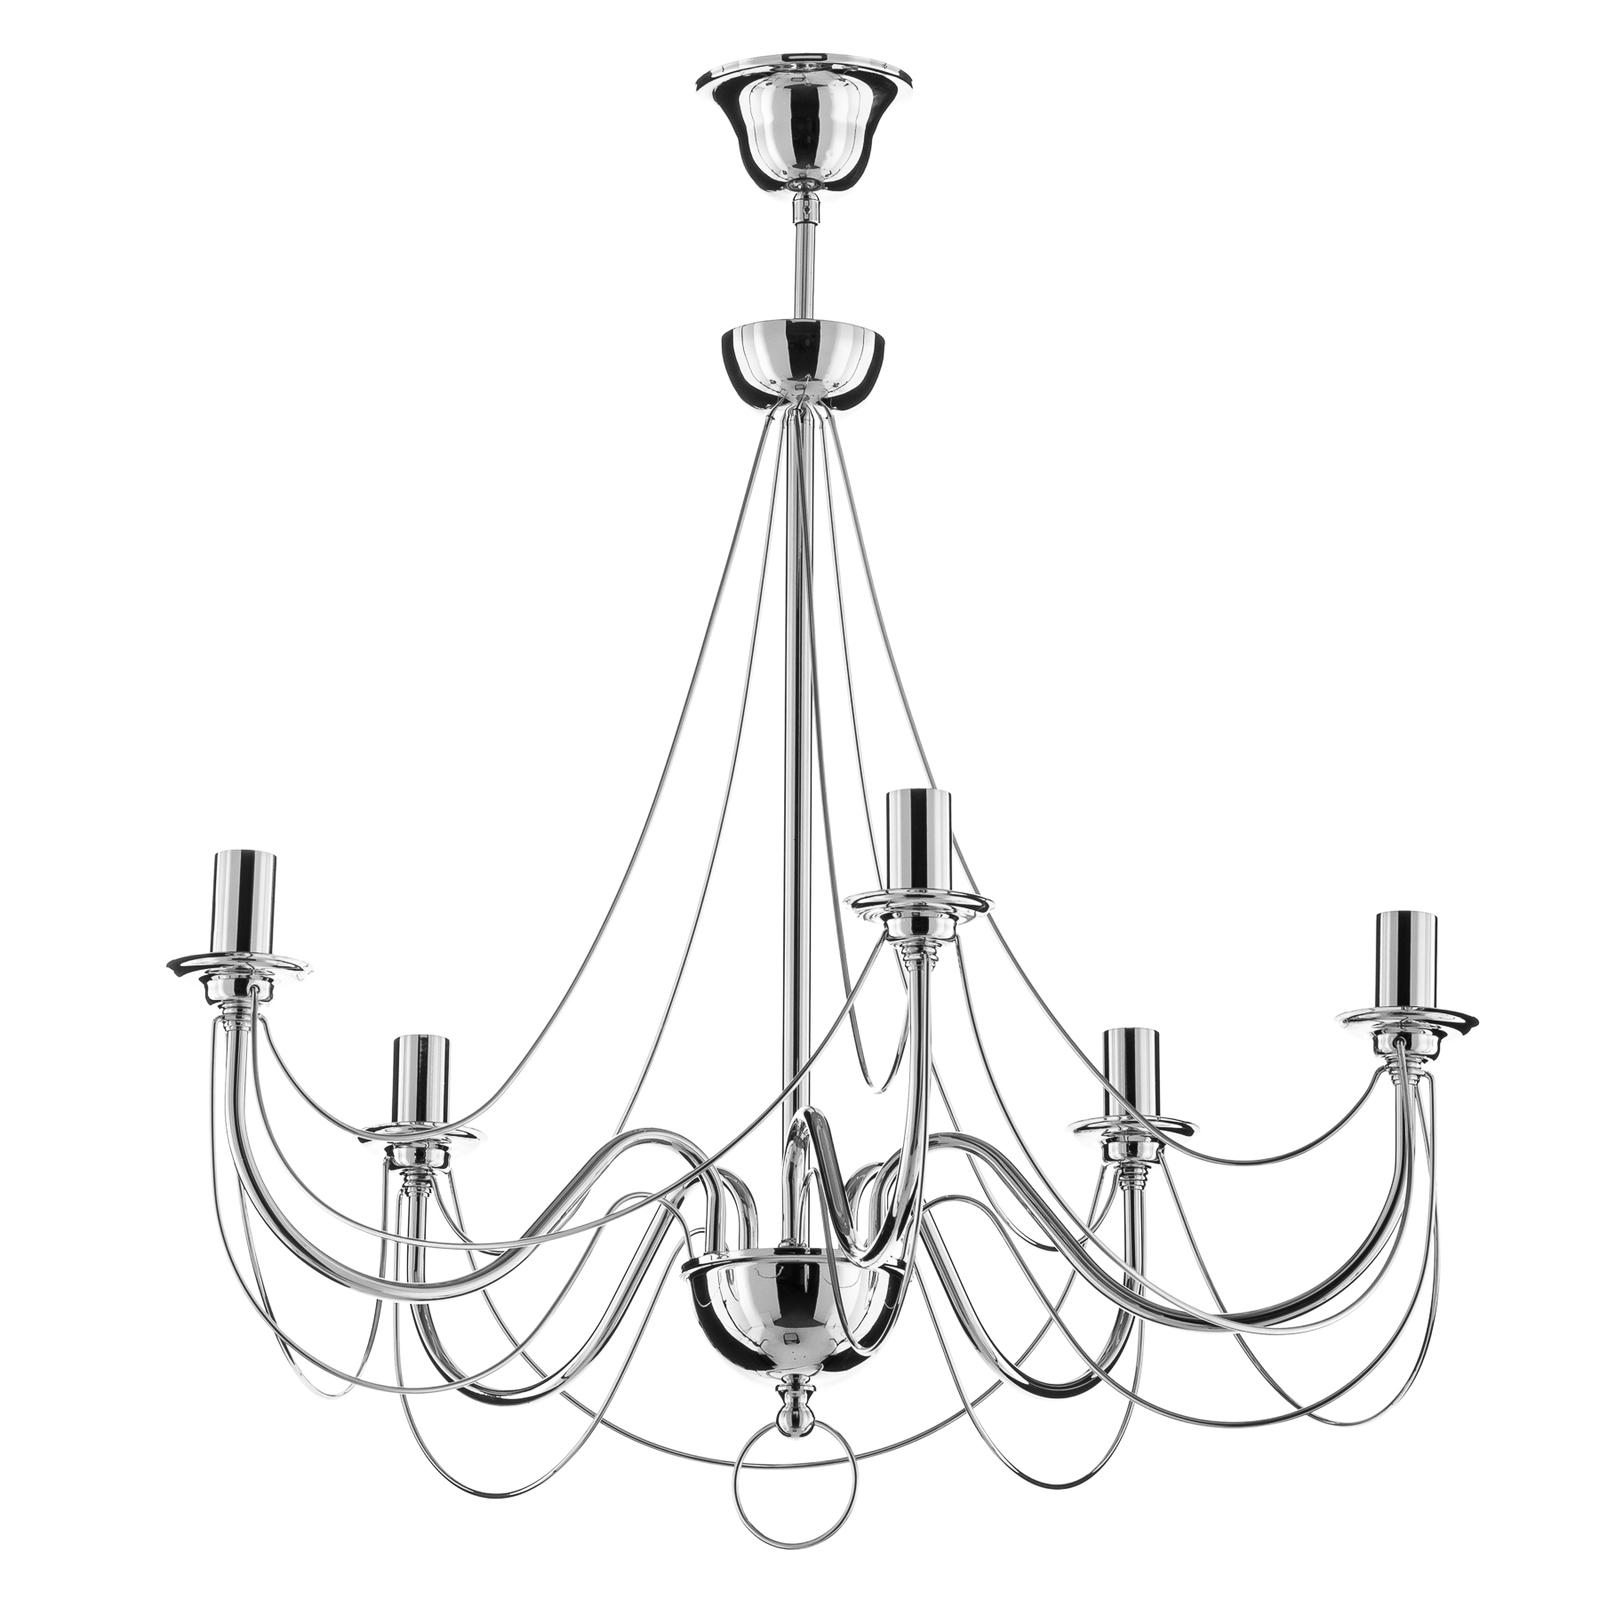 Kroonluchter Retro in zilver, 6-lamps, 75 cm